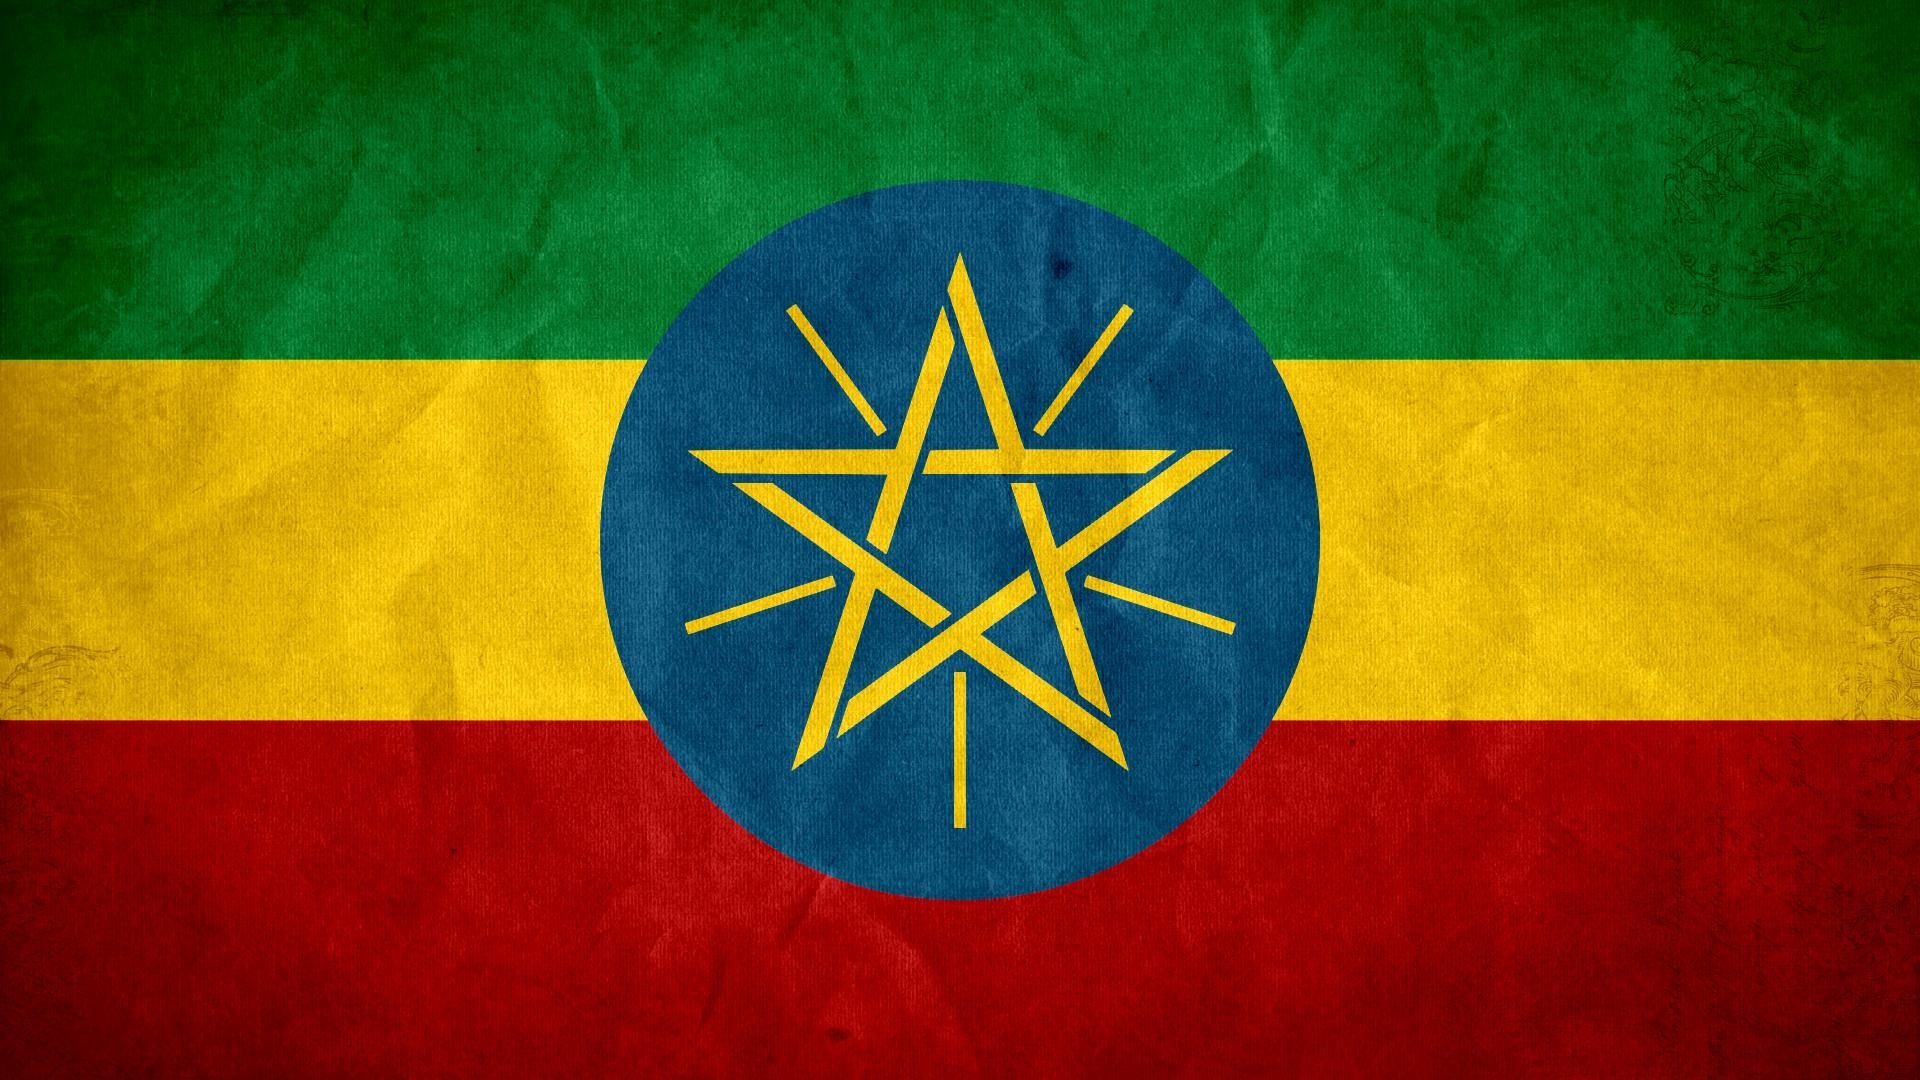 Ethiopian flag, National pride, Patriotic symbol, Cultural heritage, 1920x1080 Full HD Desktop